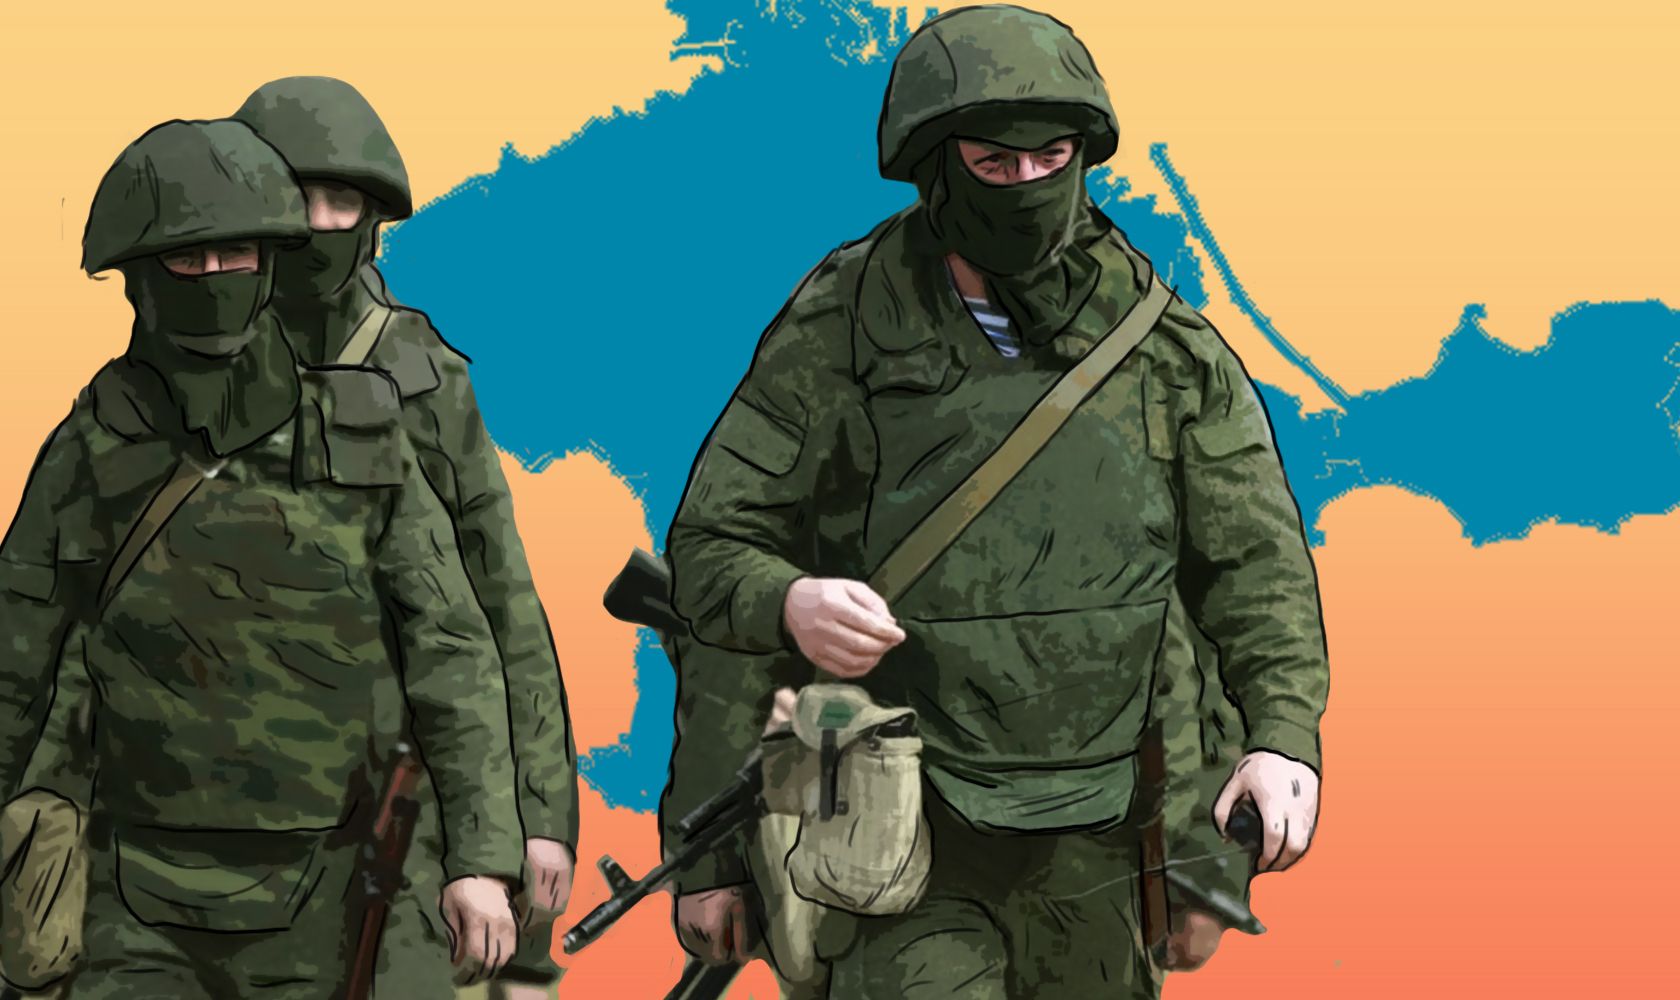 СБУ завершила розслідування щодо топчиновників окупаційної адміністрації Криму